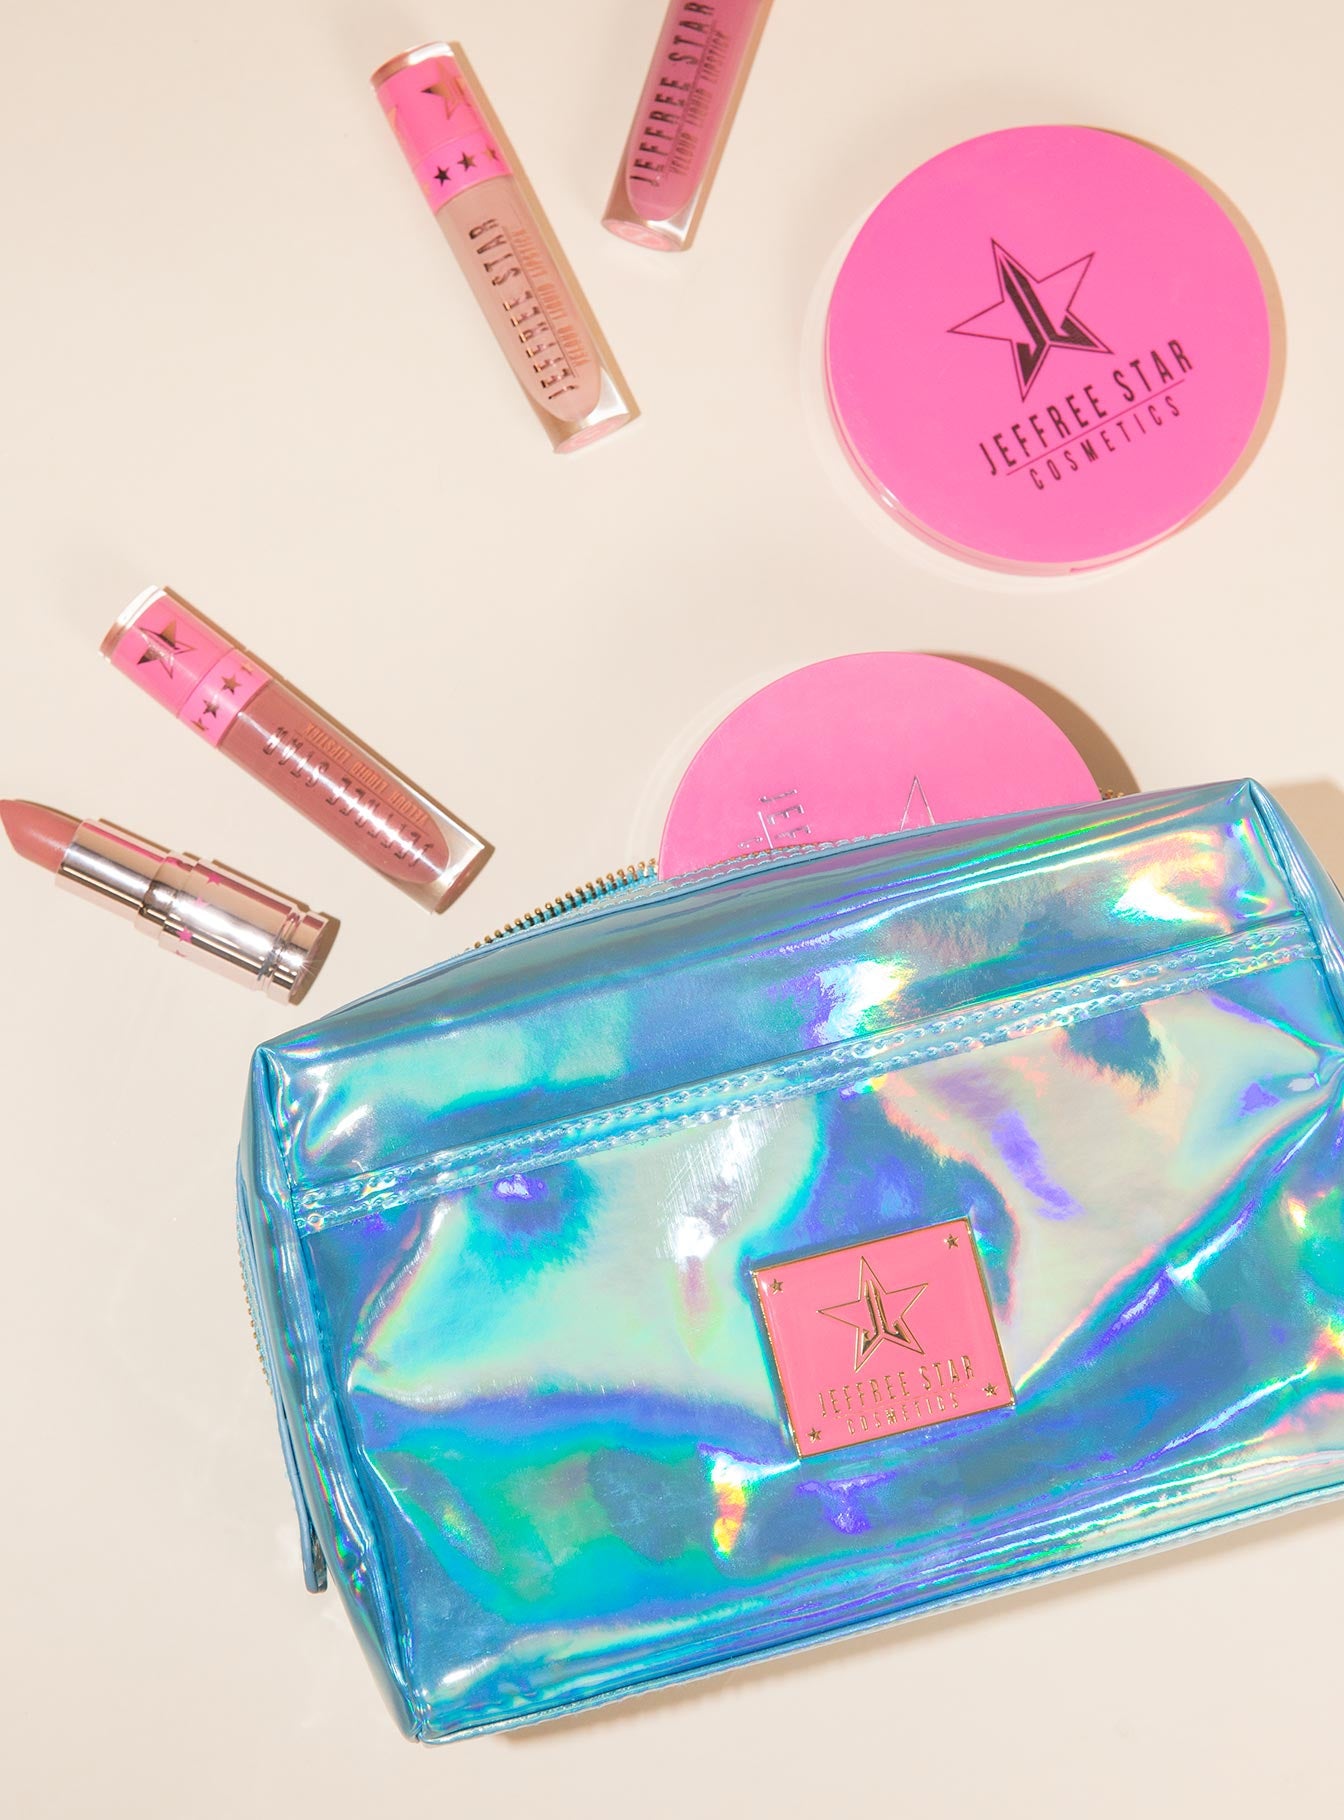 Jeffree Star Cosmetics Makeup Bag – Princess Polly AUS